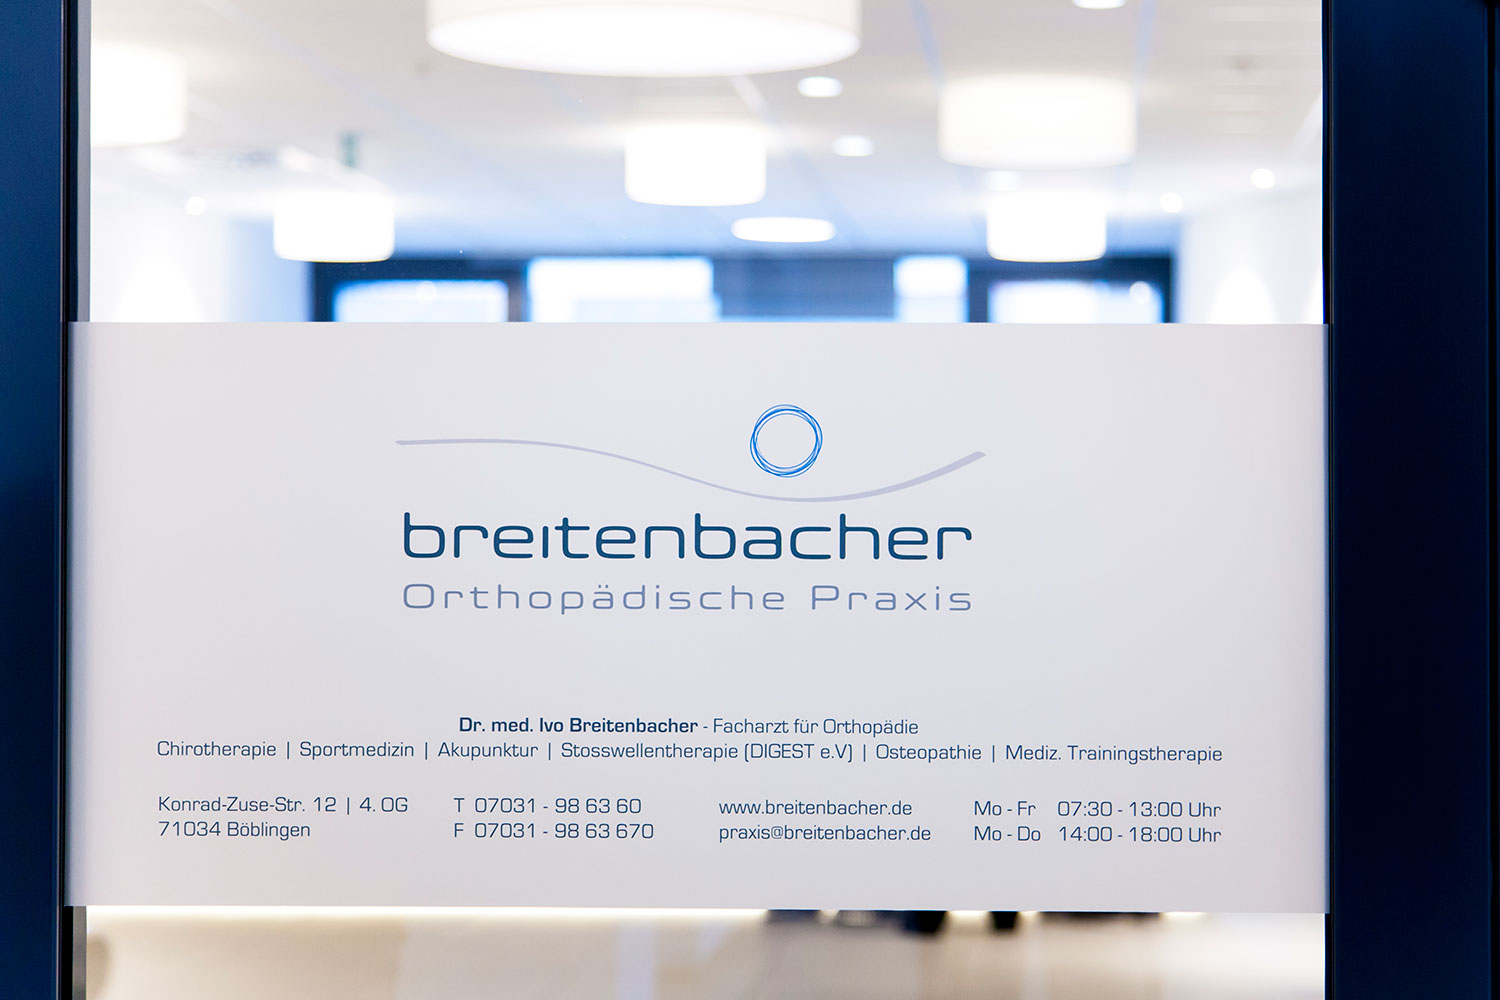 OUTIN | Guelie & Riehl | Innenarchitekt, Referenz Bilder: Orthopädische Praxis Dr. Breitenbacher in Böblingen